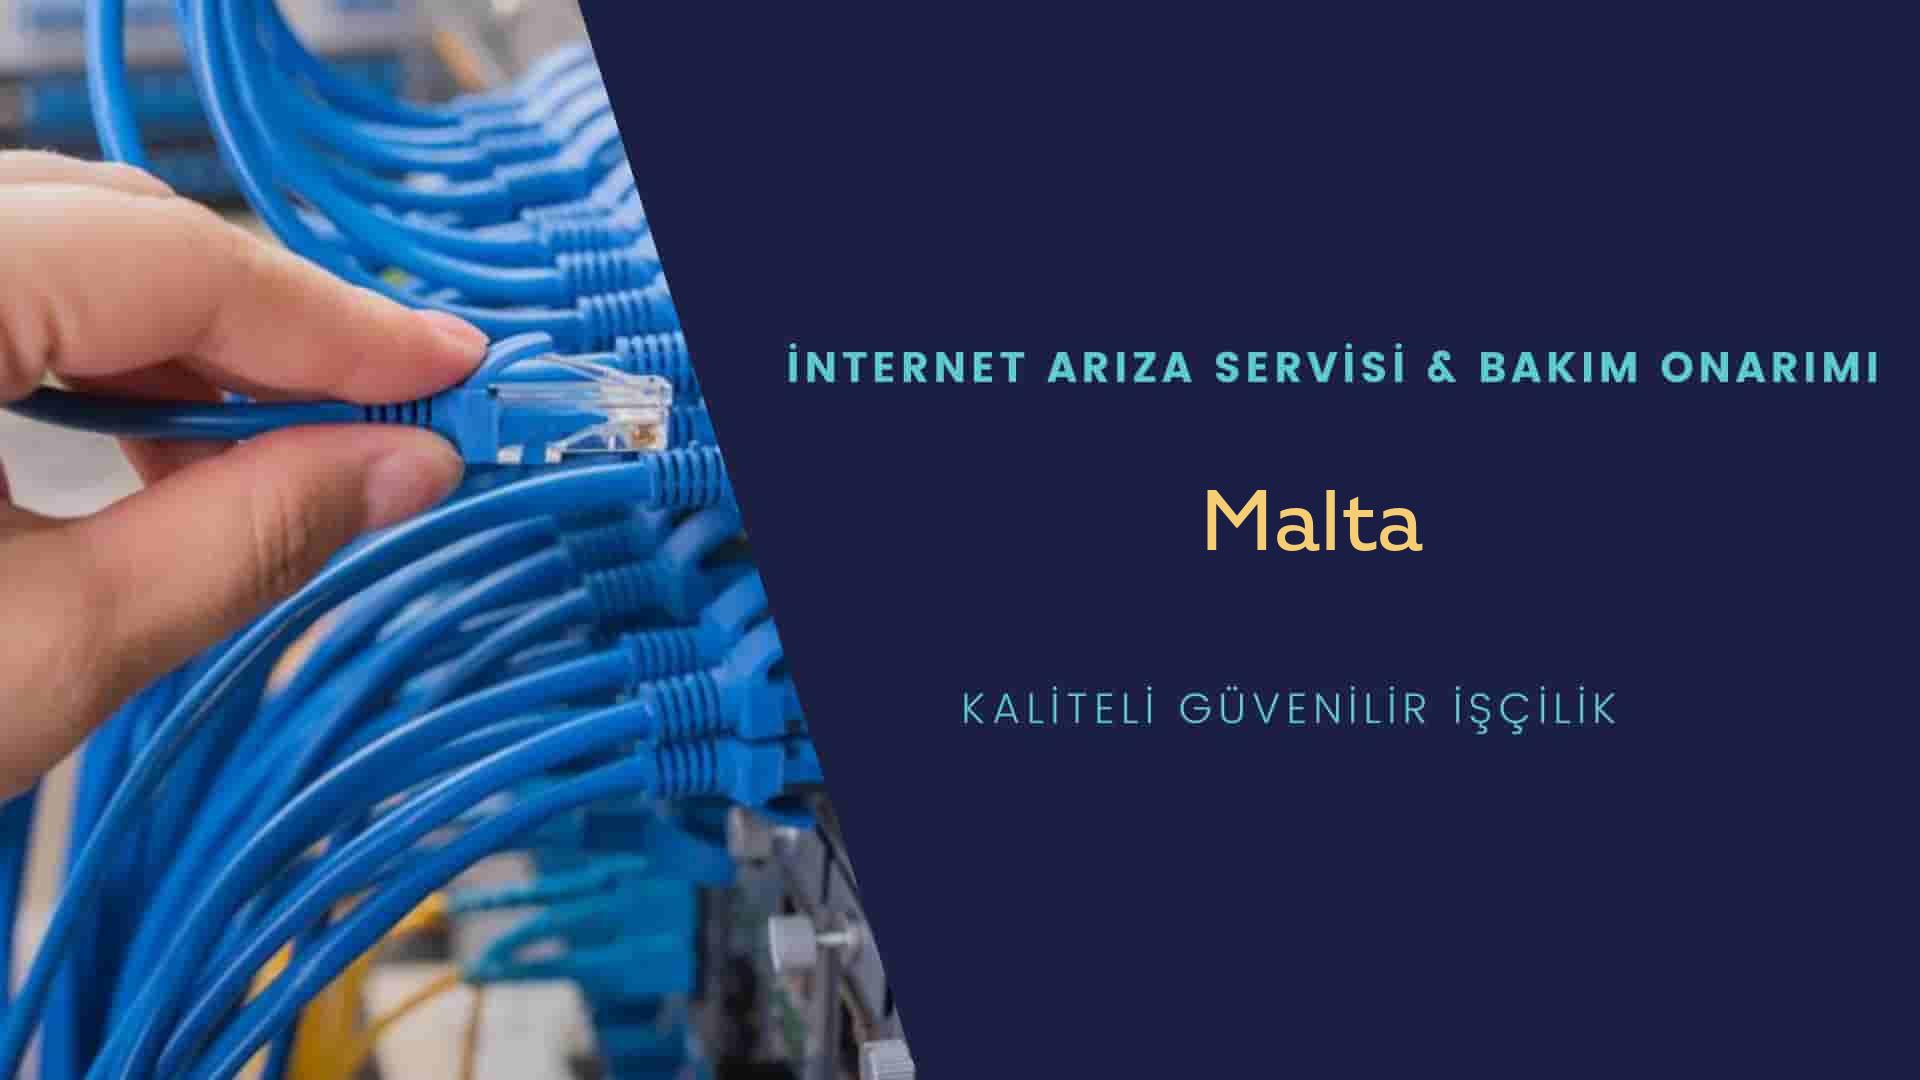 Malta internet kablosu çekimi yapan yerler veya elektrikçiler mi? arıyorsunuz doğru yerdesiniz o zaman sizlere 7/24 yardımcı olacak profesyonel ustalarımız bir telefon kadar yakındır size.